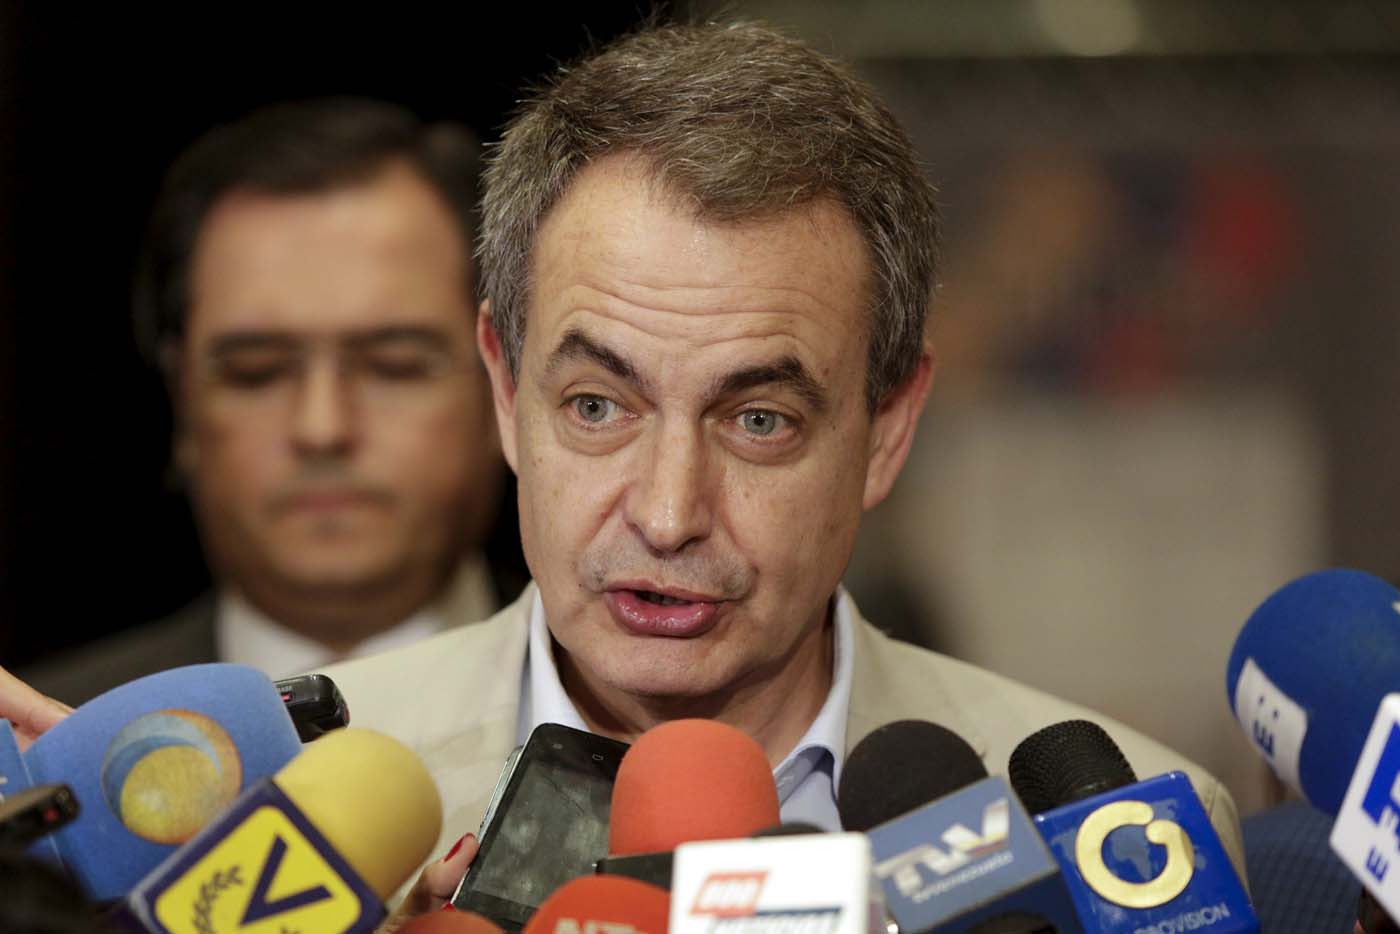 Zapatero y Fernández, mediadores en diálogo venezolano, se reunieron en Dominicana